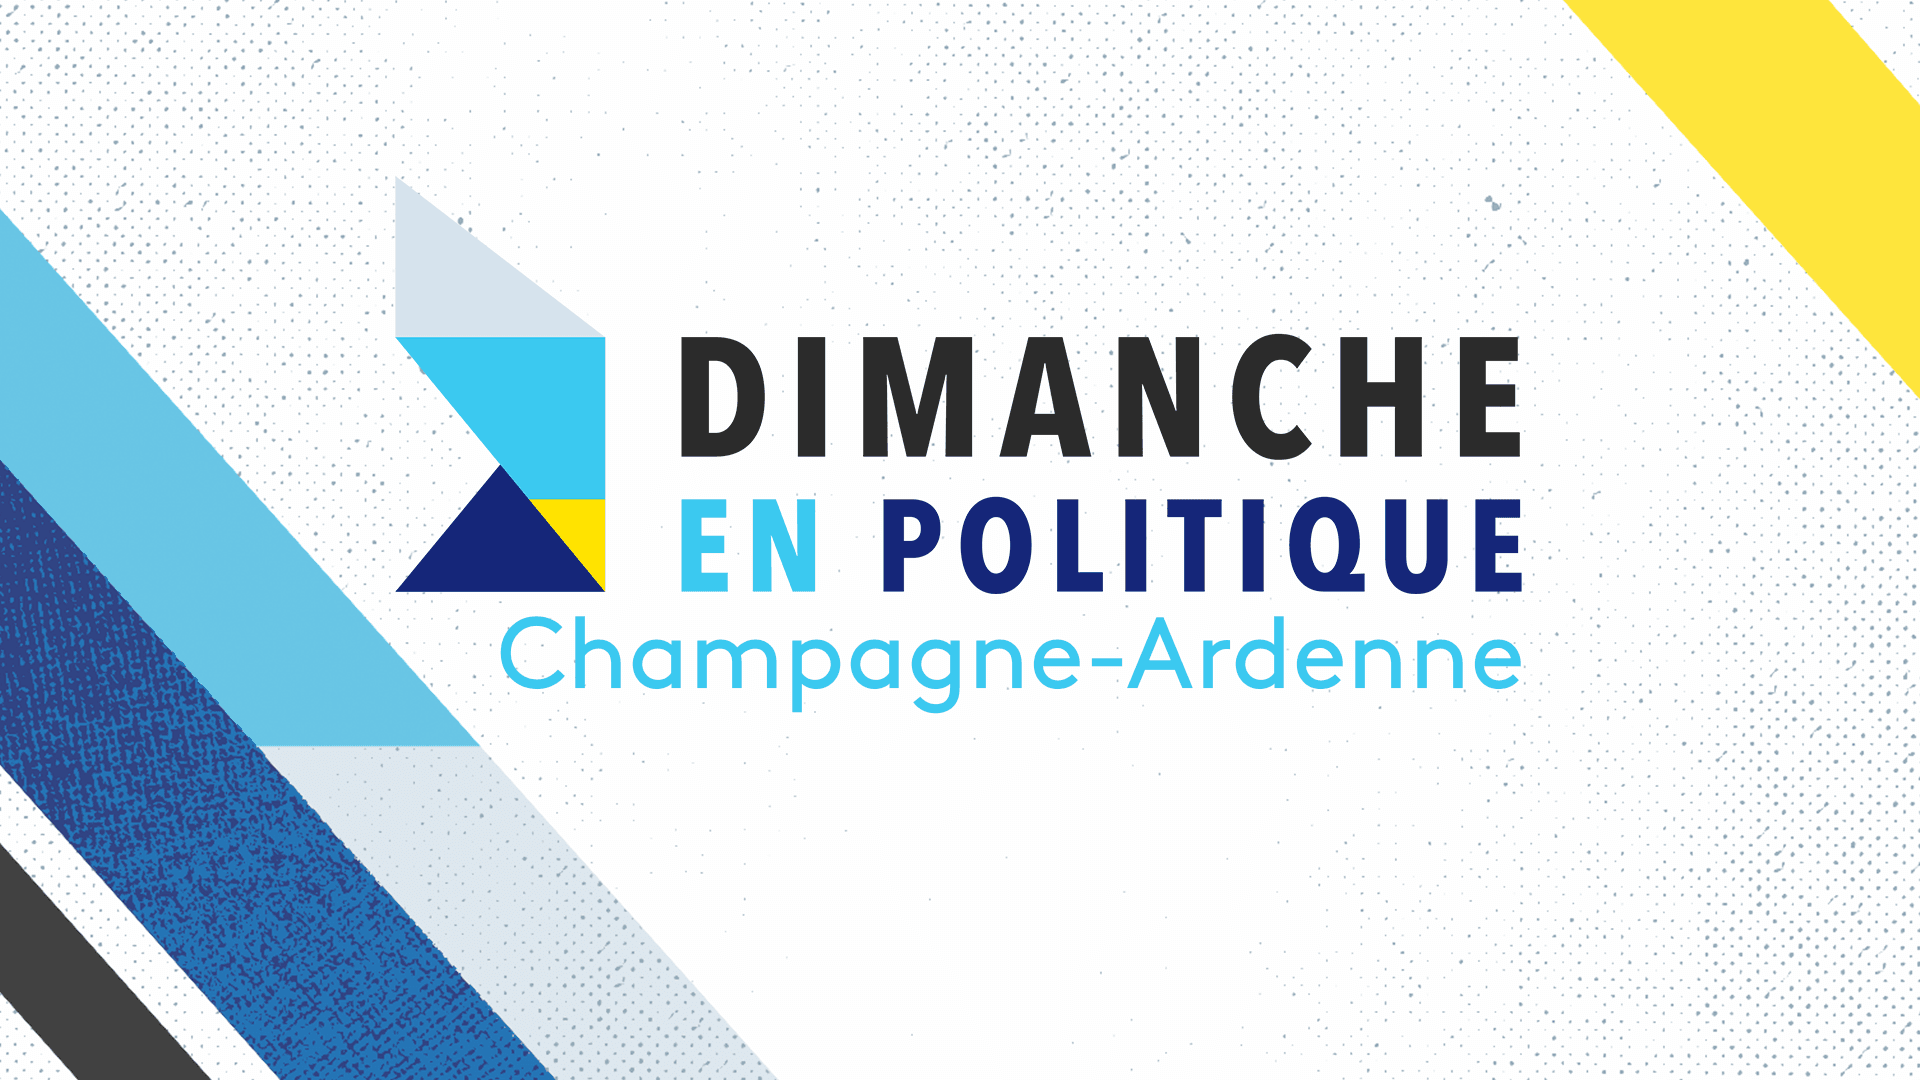 Dimanche en politique - Champagne-Ardenne